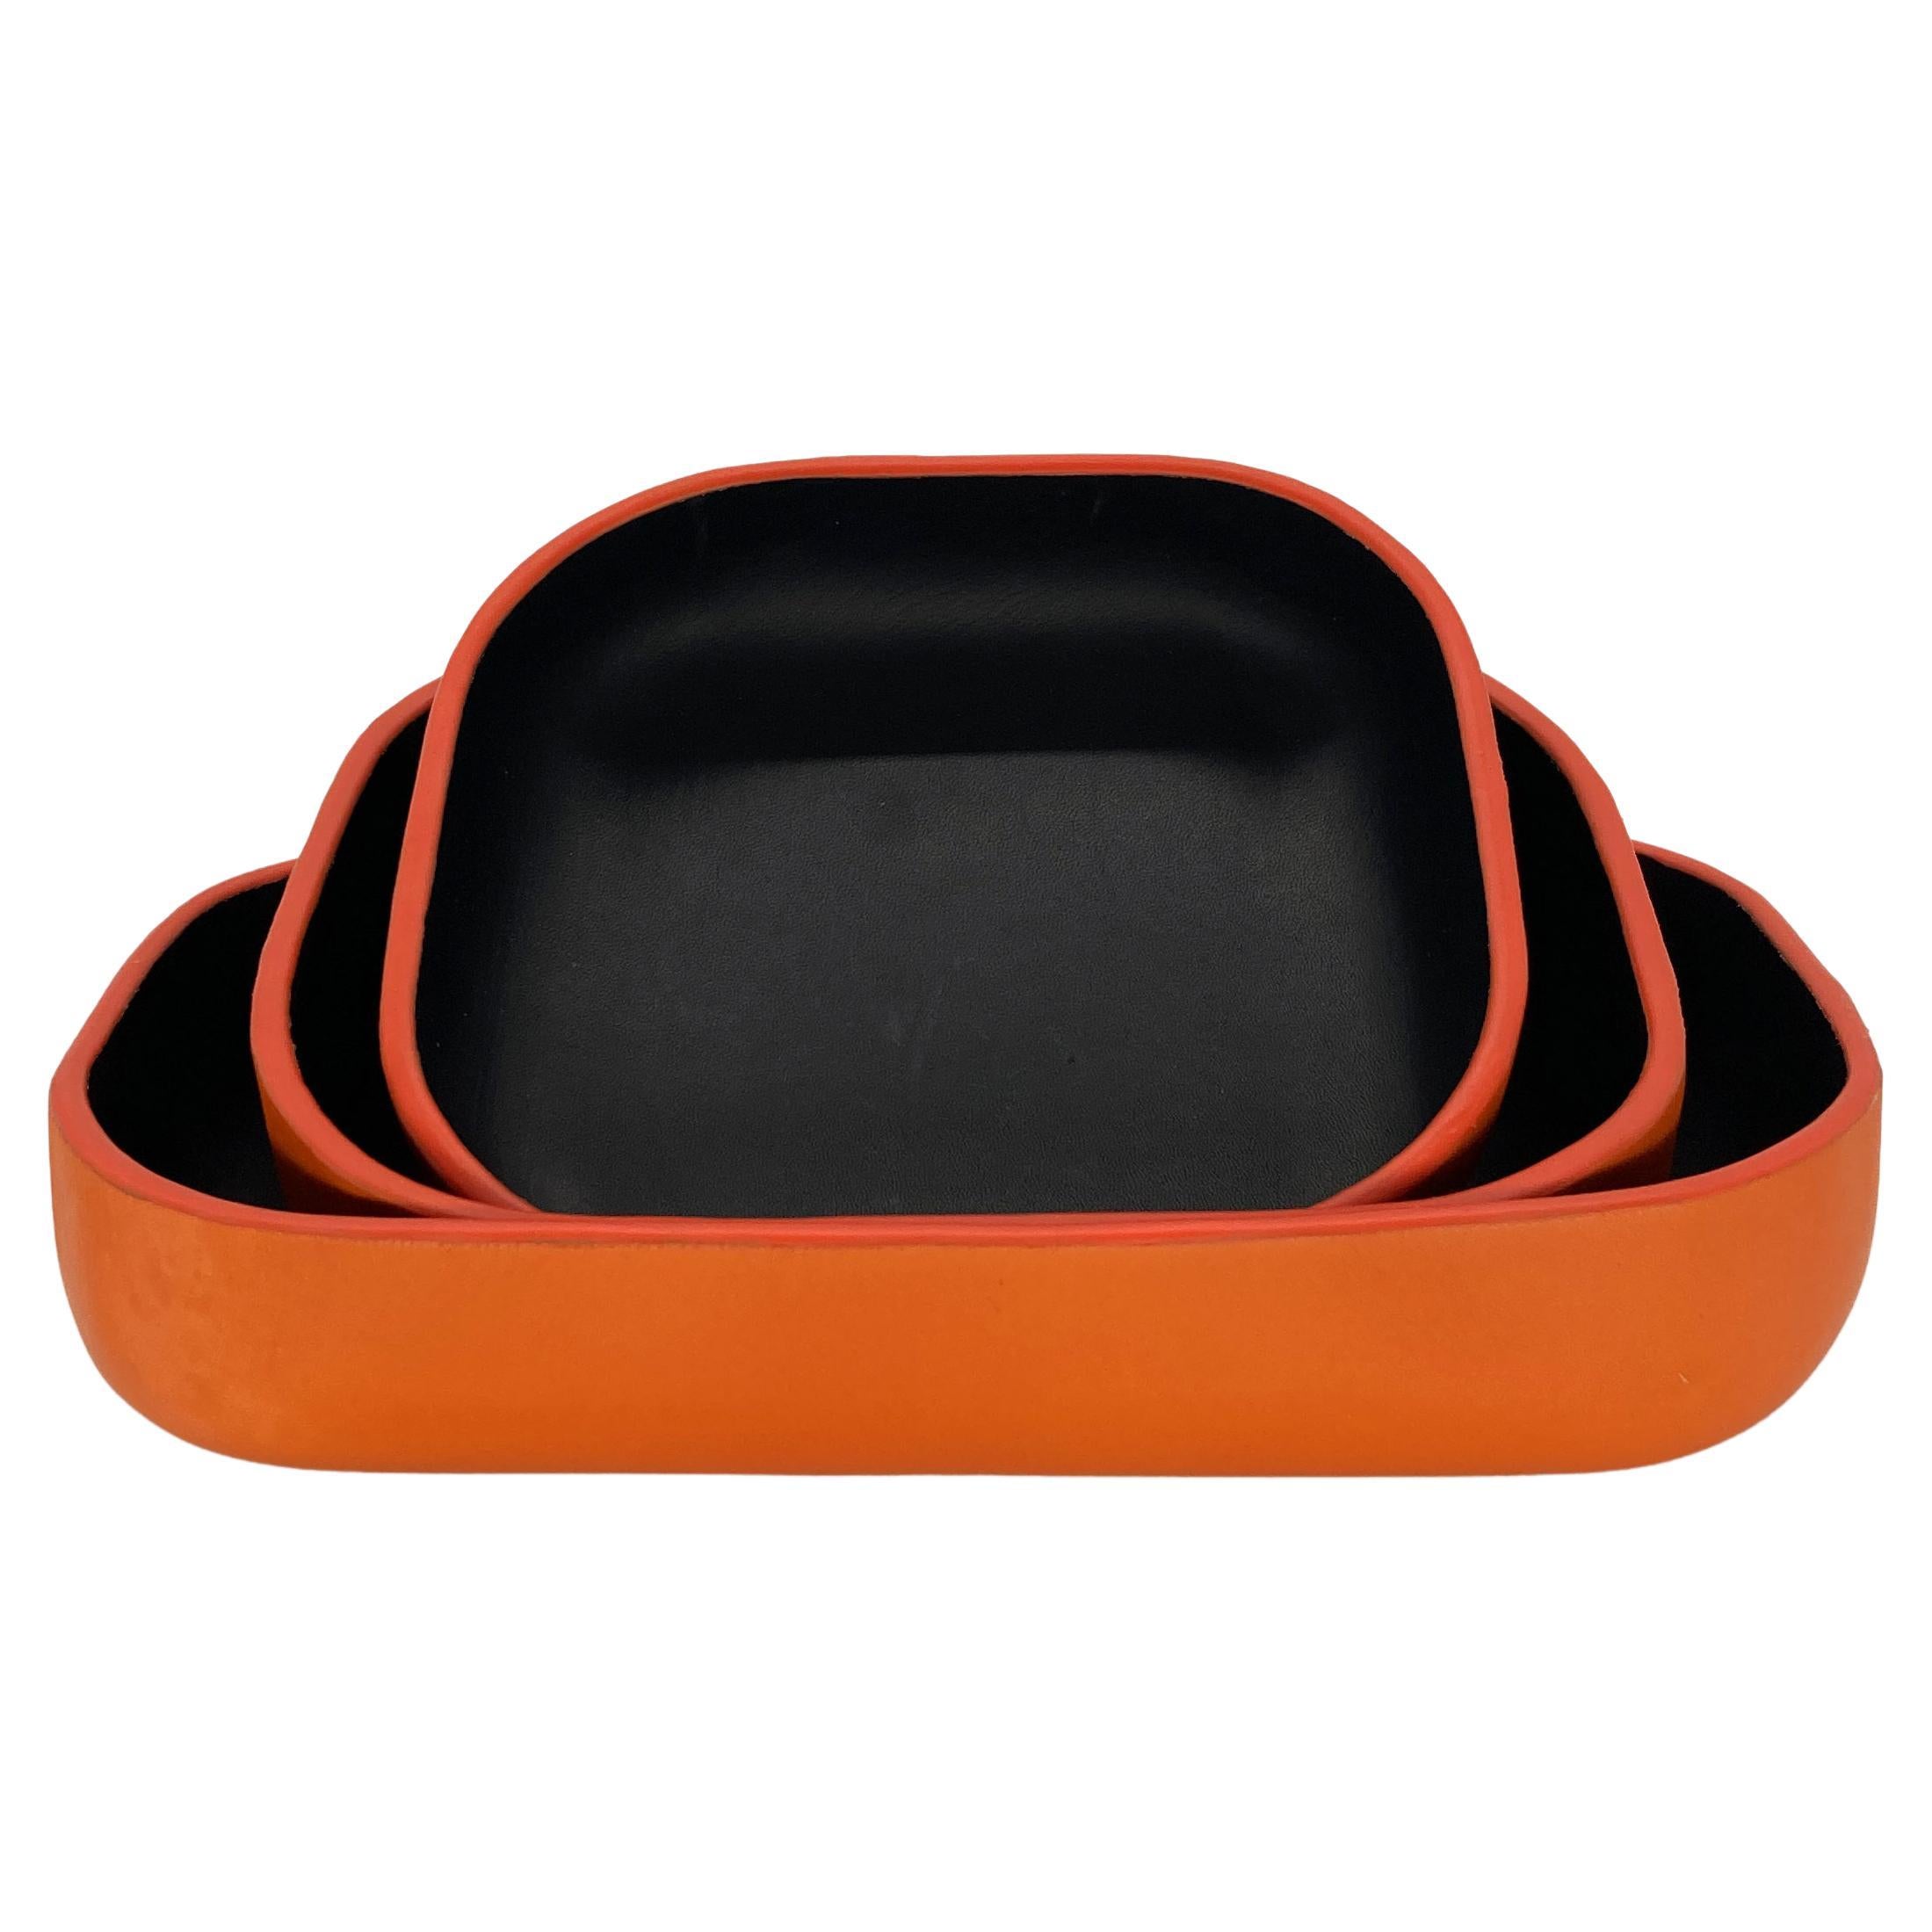 Handgefertigtes dreifaches Tablett-Set aus luxuriösem Leder in Sunrise Orange und Schwarz